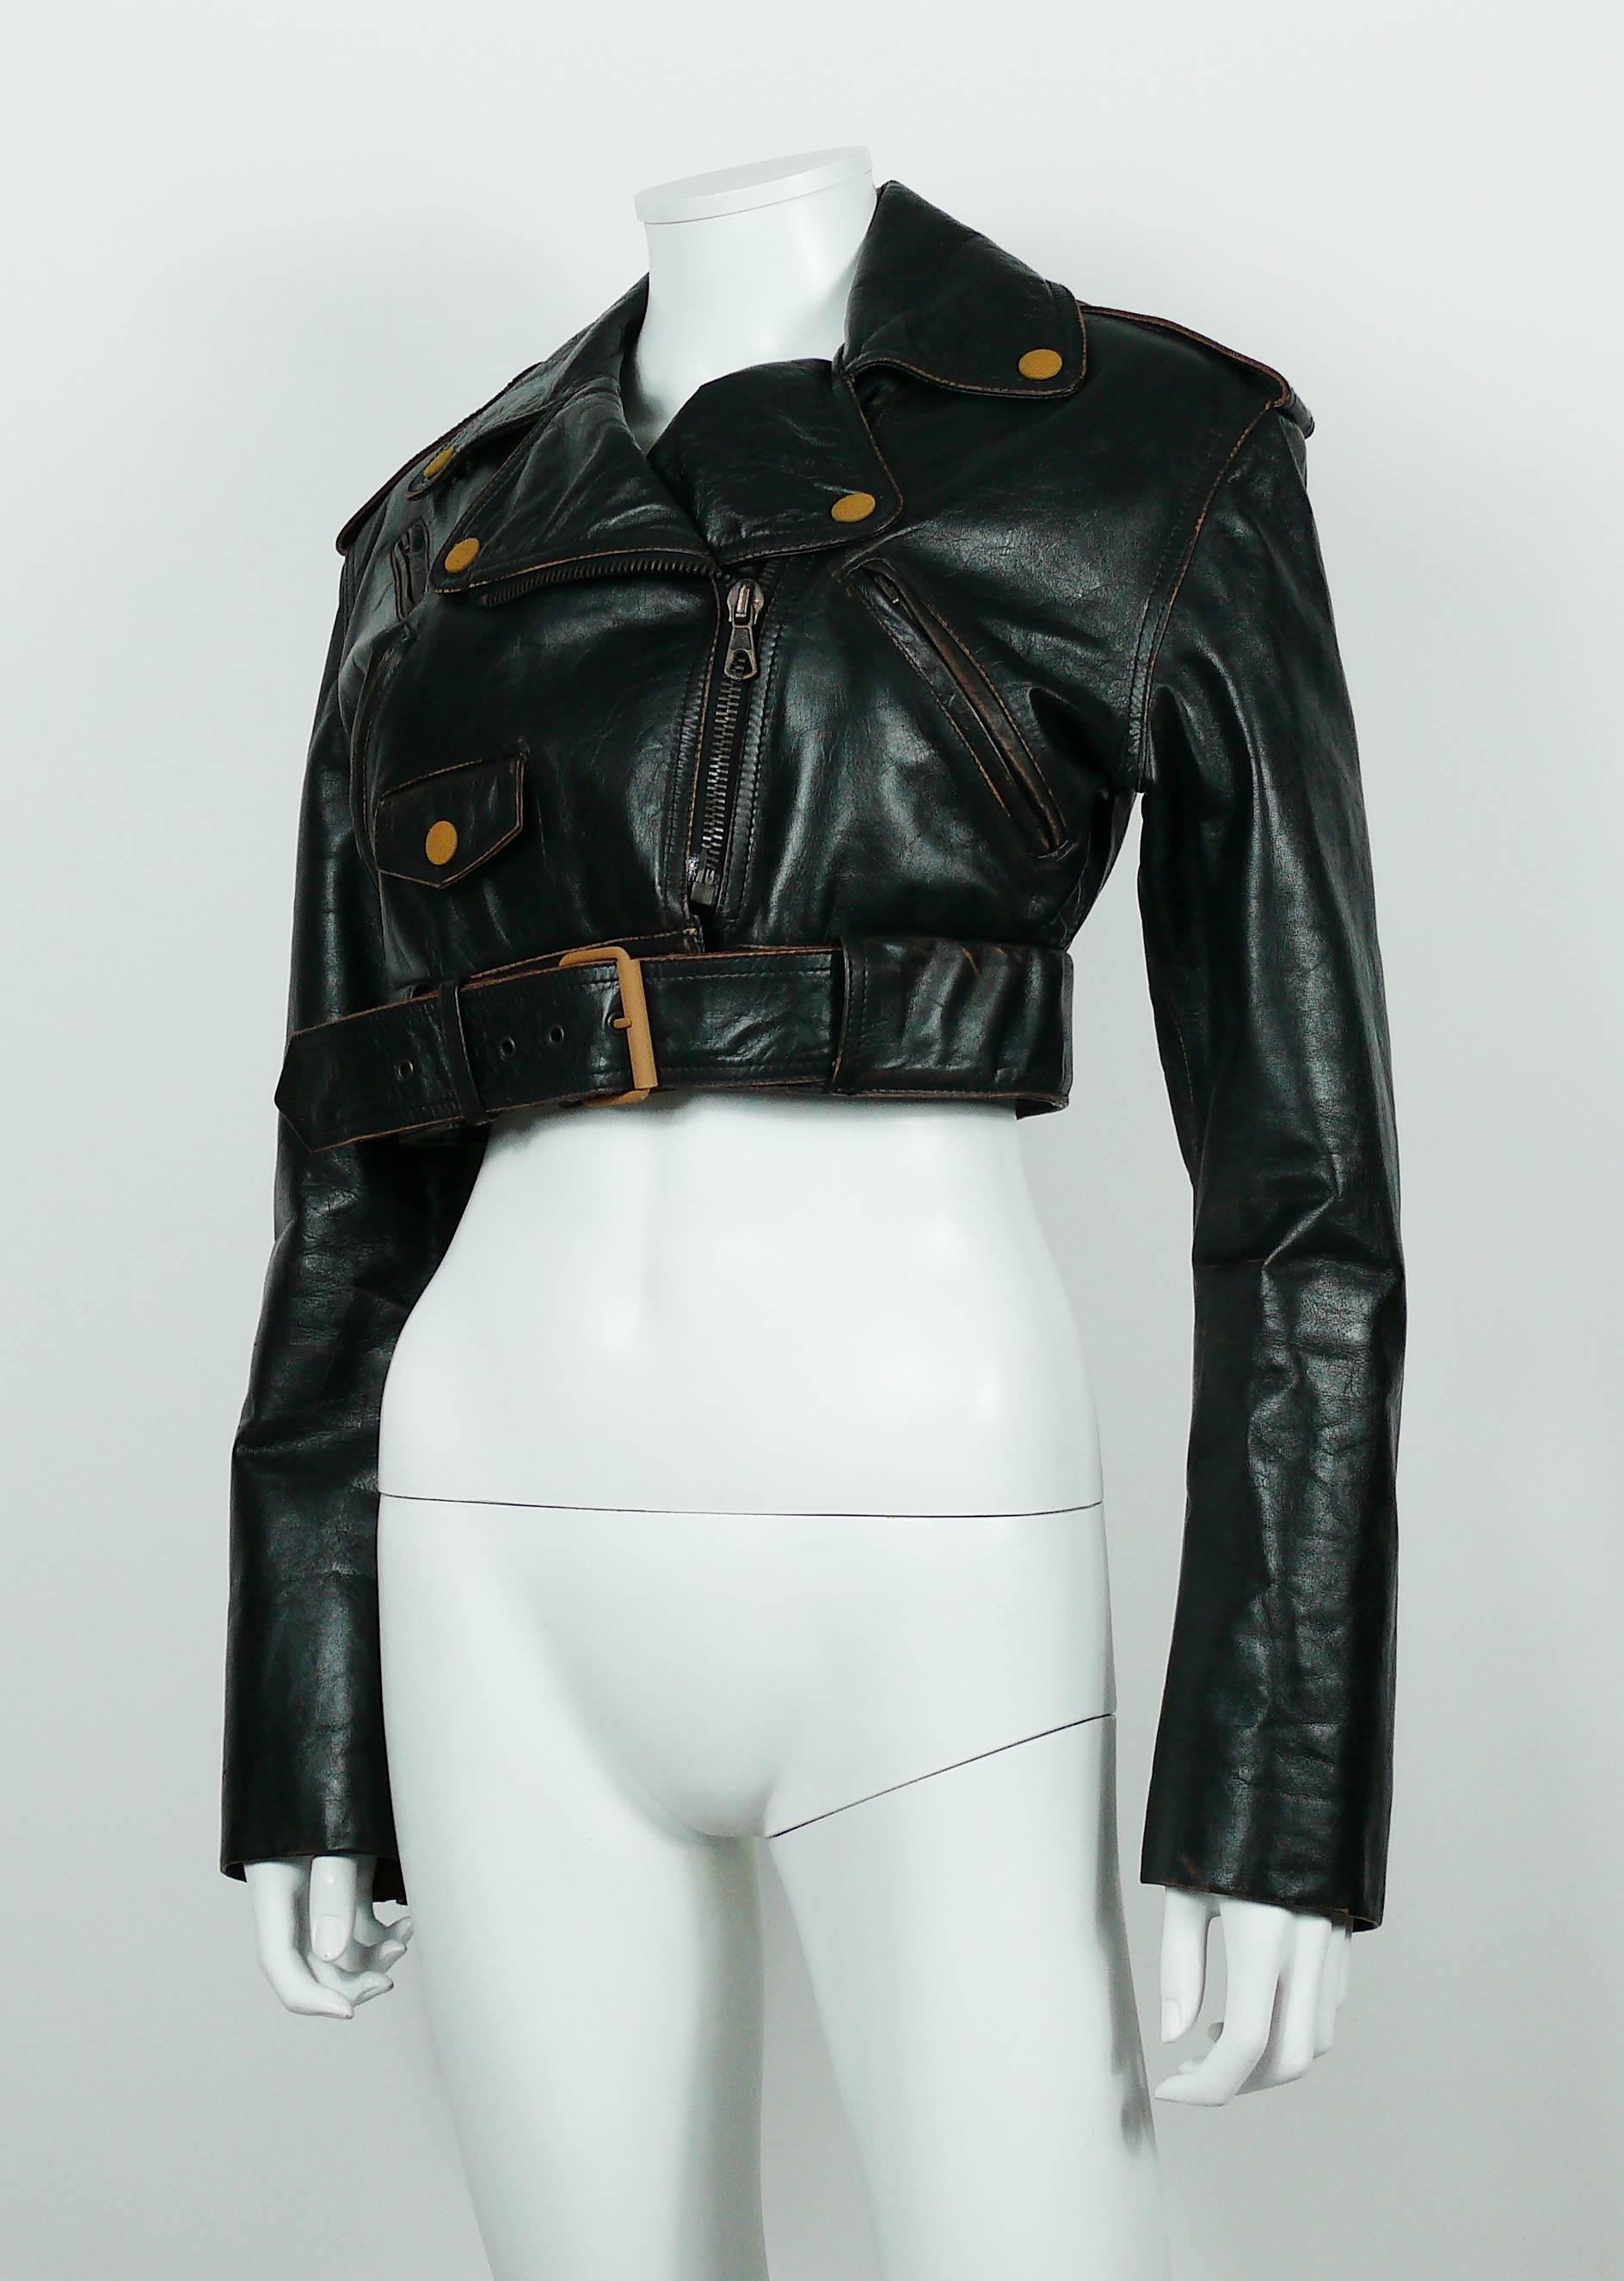 Women's Jean Paul Gaultier Vintage Cropped Biker Jacket 